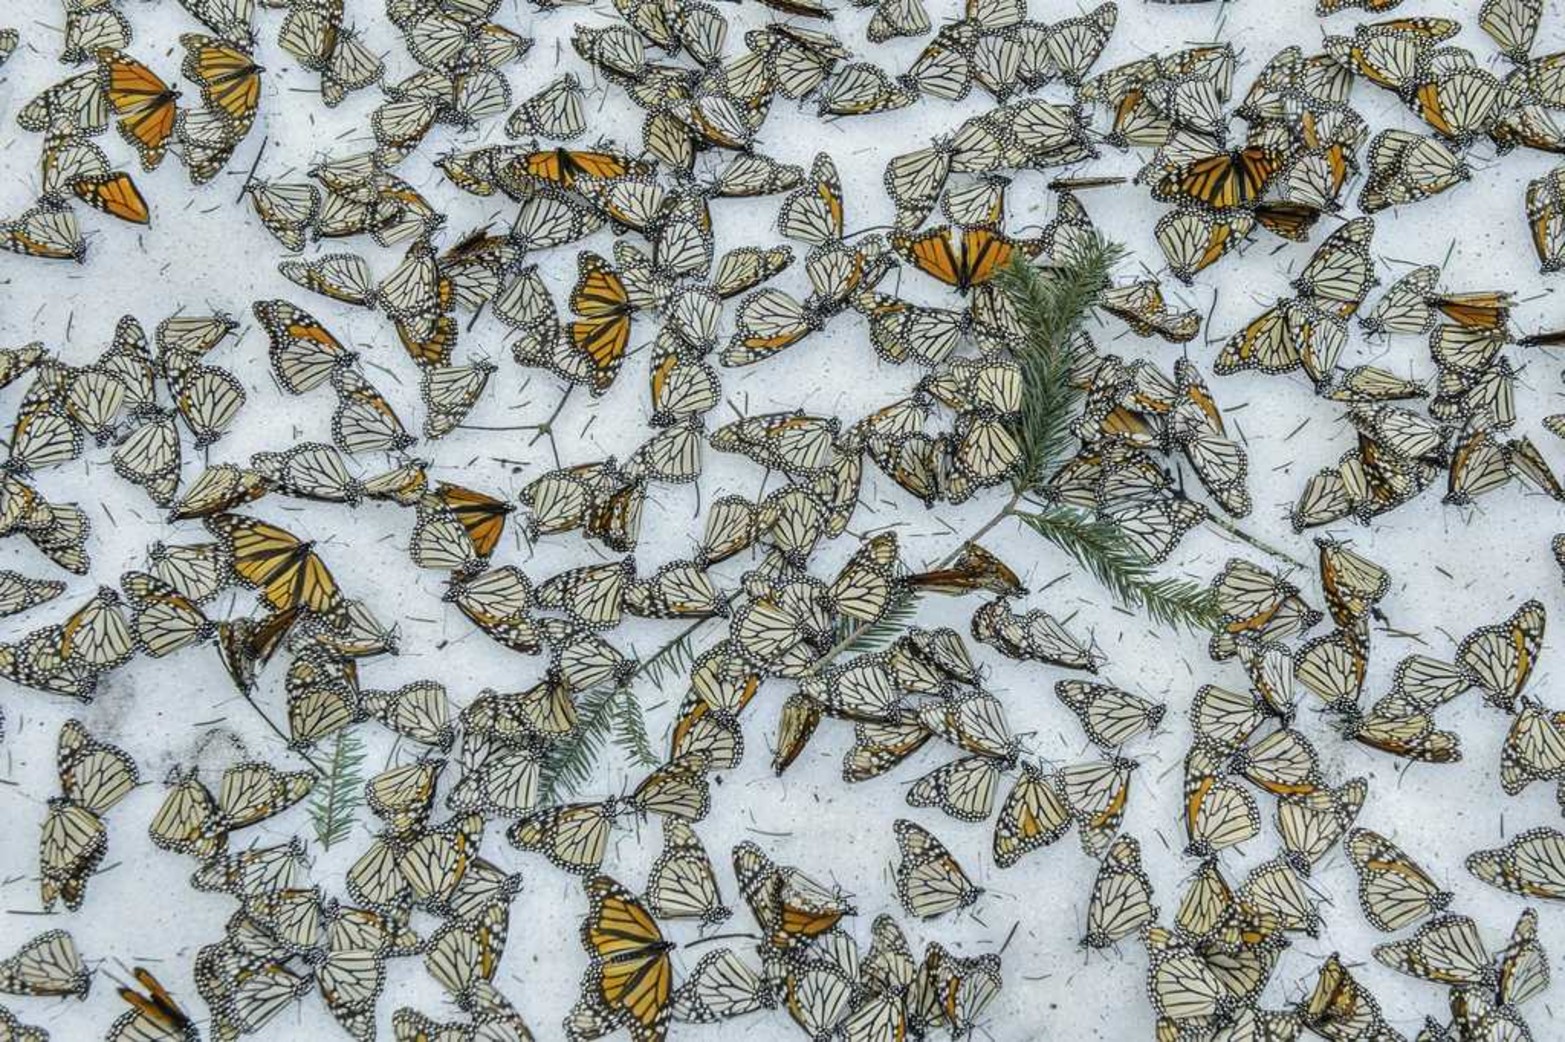 Tercer premio World Press Photo en la categoría de Naturaleza, tomada por el fotógrafo español Jaime Rojo. La imagen muestra un manto de mariposas monarca sobre la nieve en el santuario de mariposas de El Rosario en Michoacan (México), el 12 de marzo de 2017.